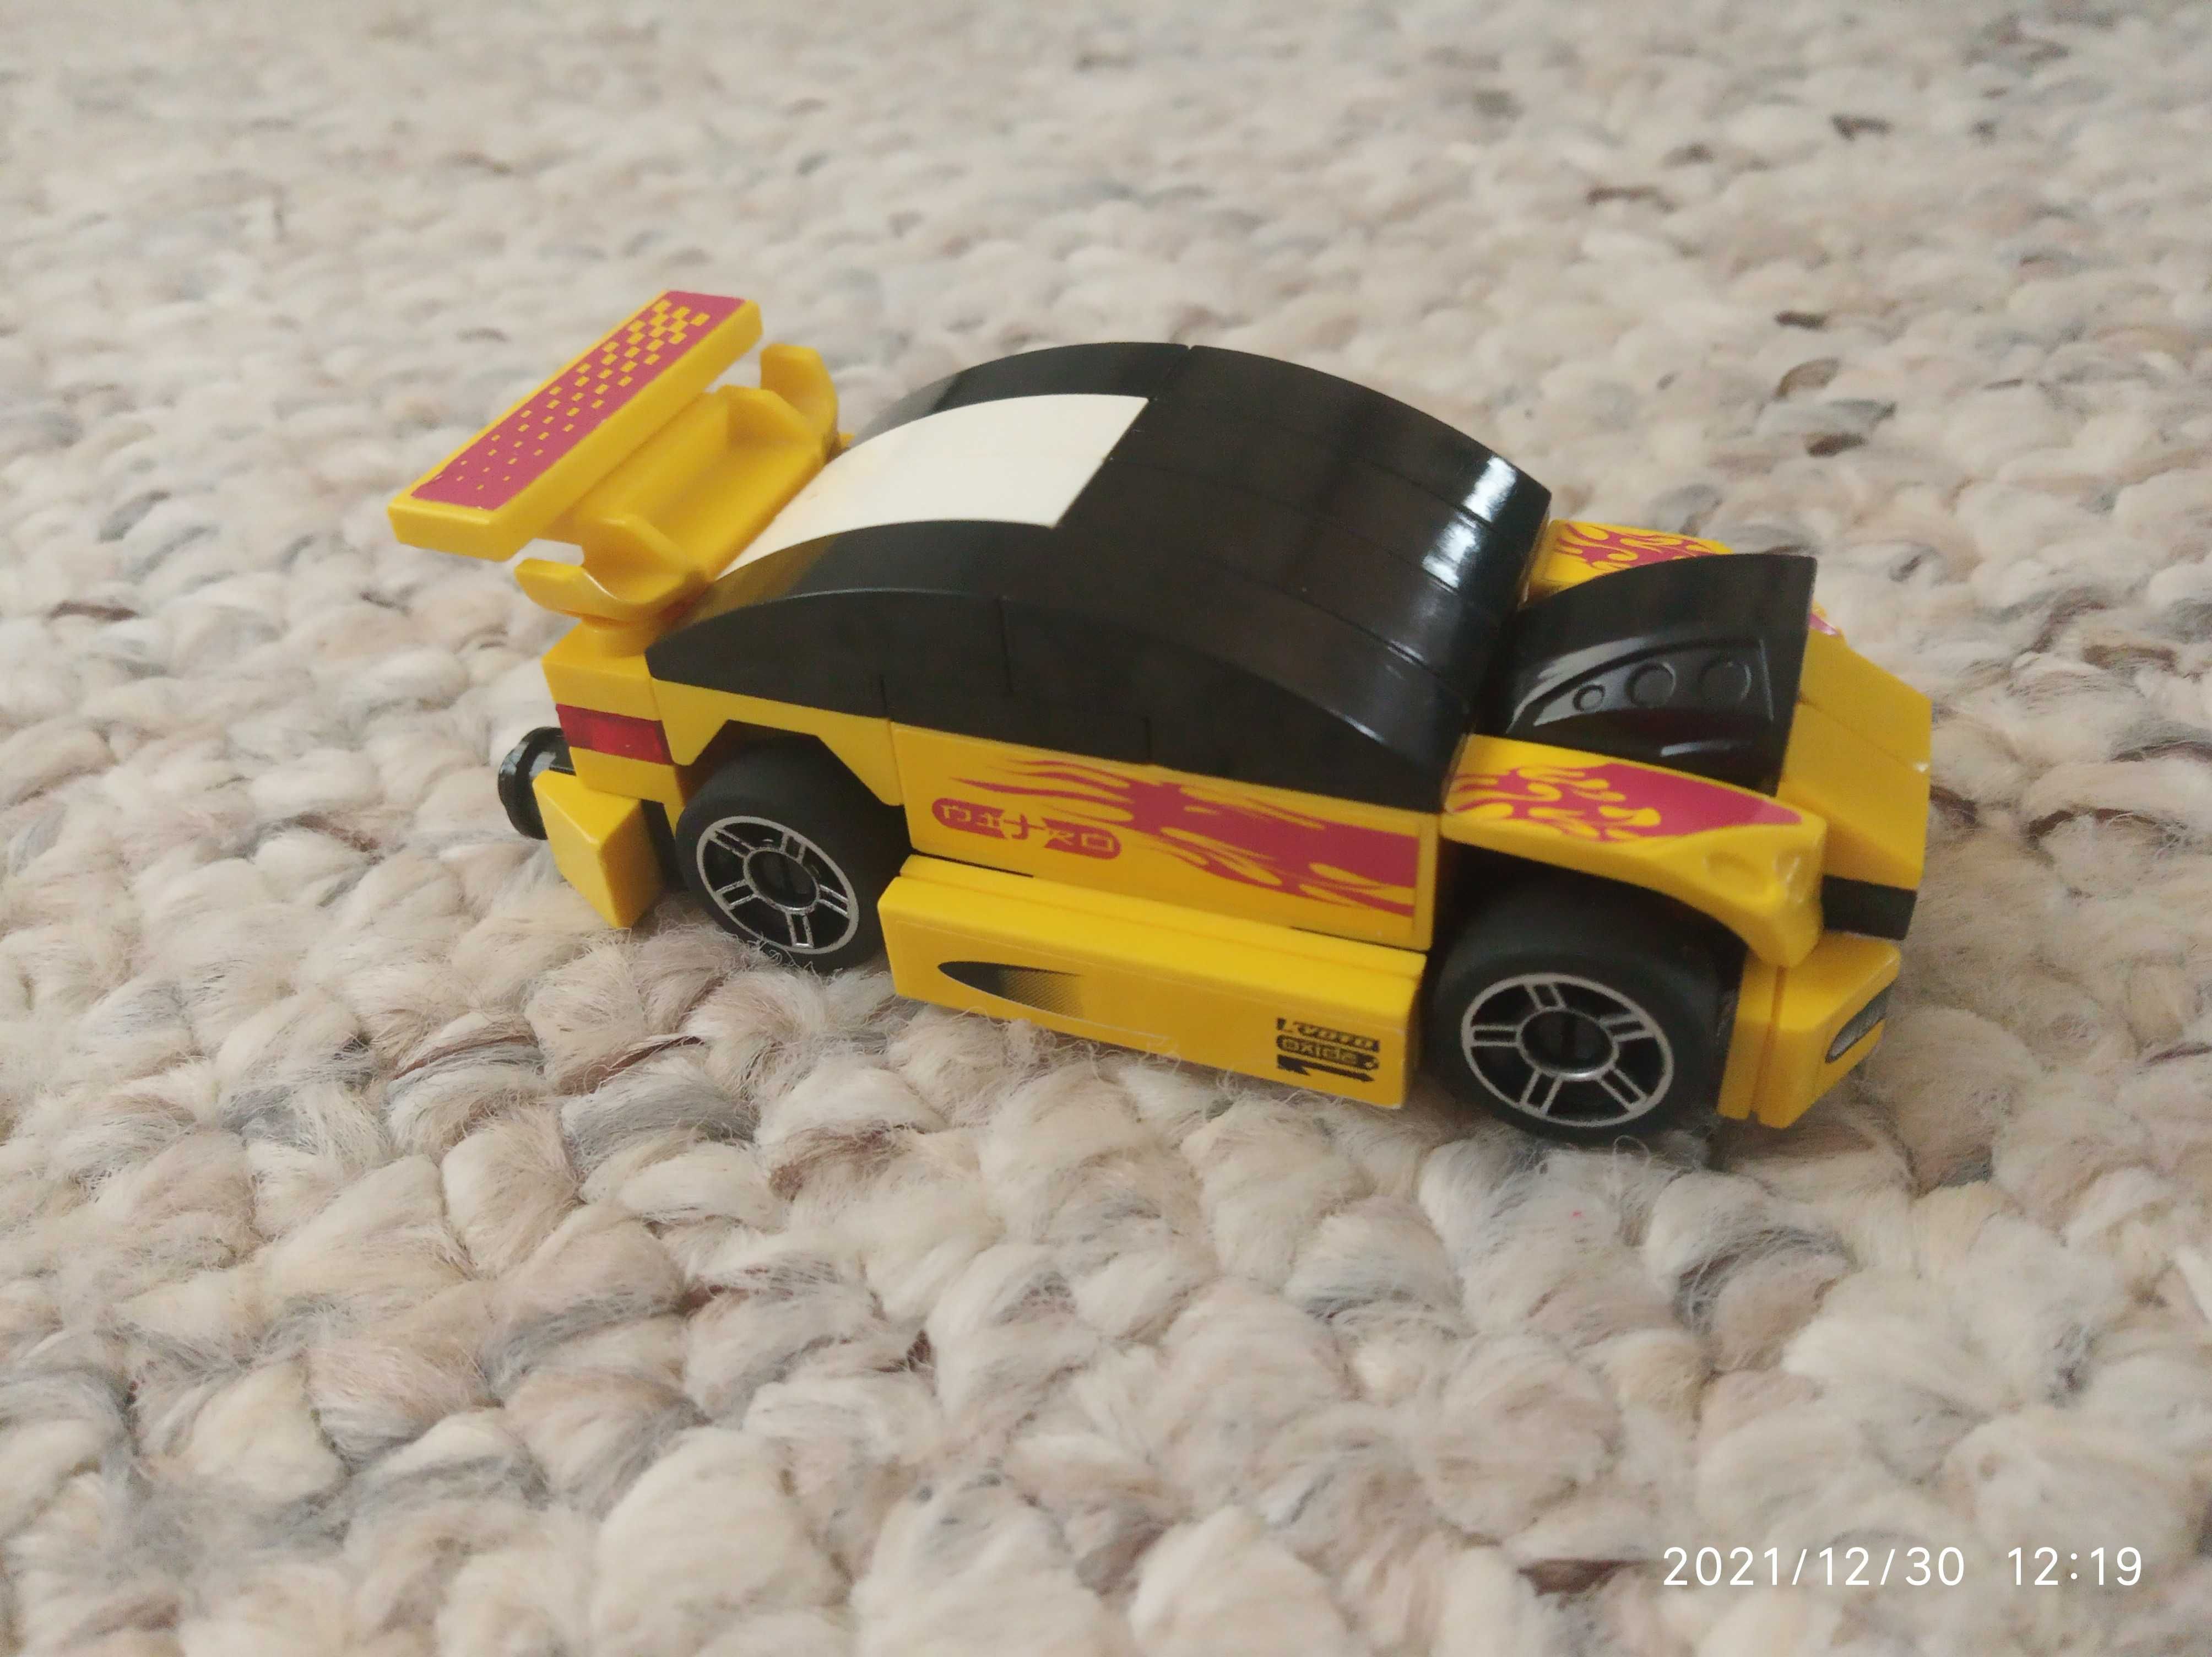 Lego Rasers - samochodziki